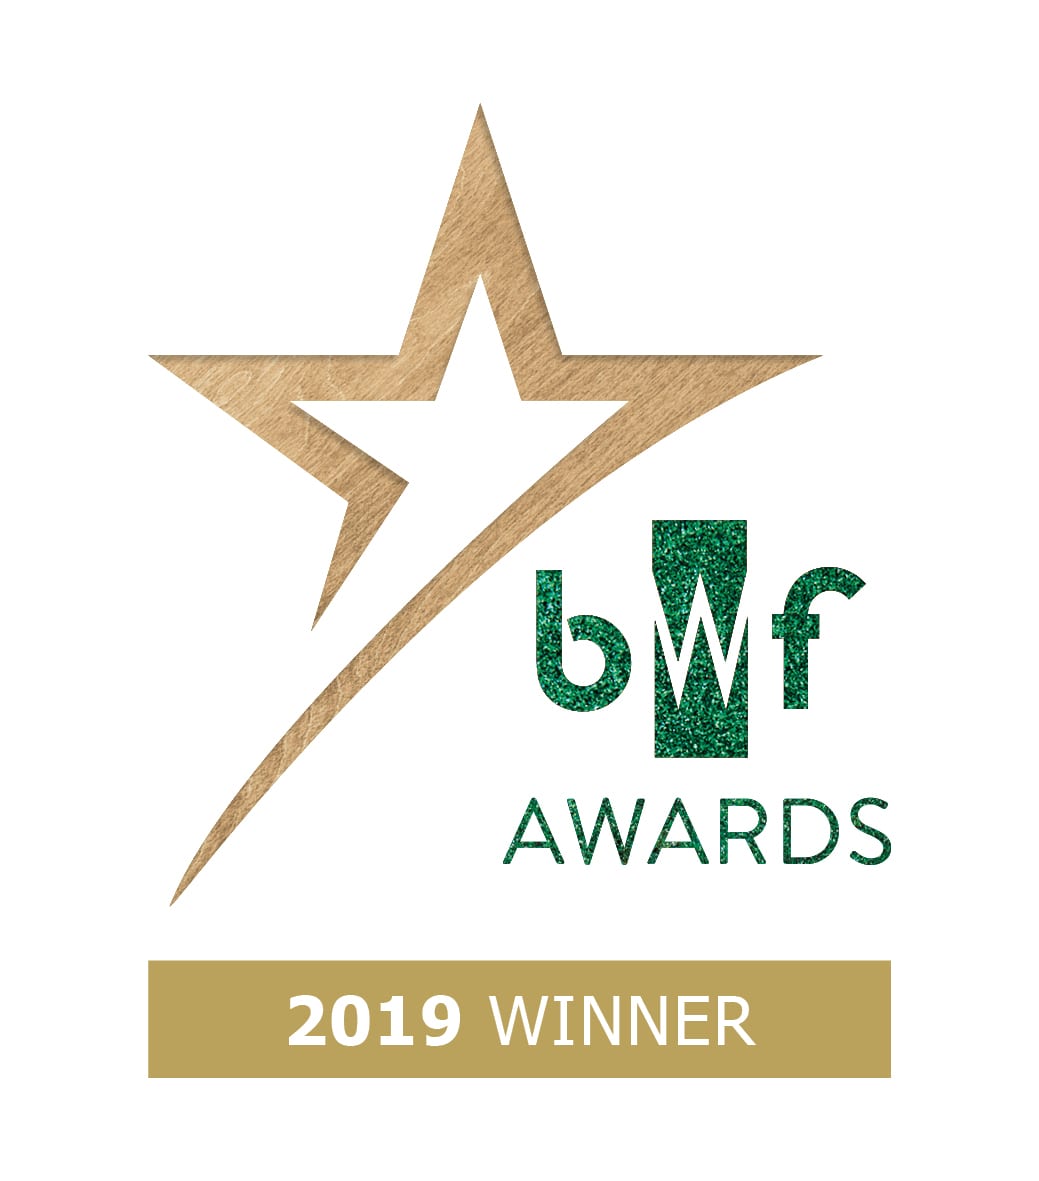 BWF Awards winner logo